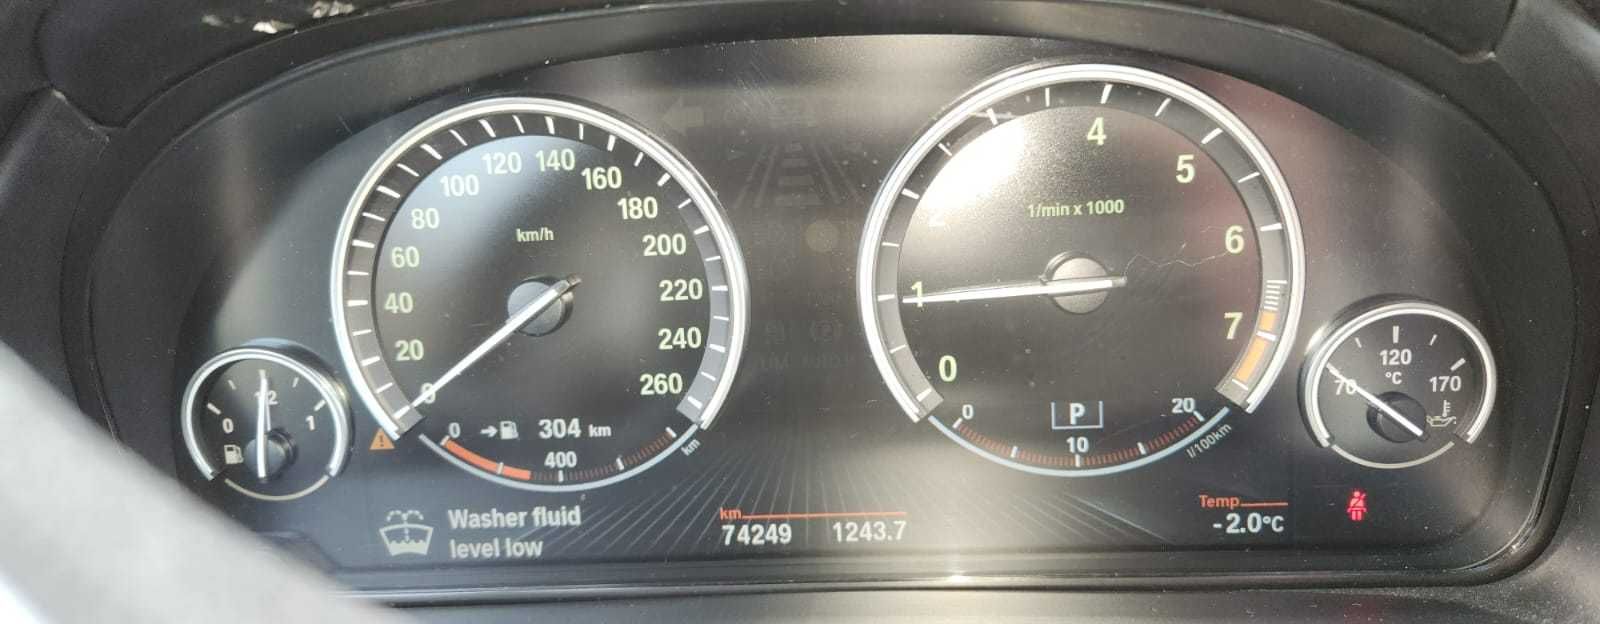 vand BMW X5 stare excelenta, an 2014, 75000 km, interior piele, 306 CP